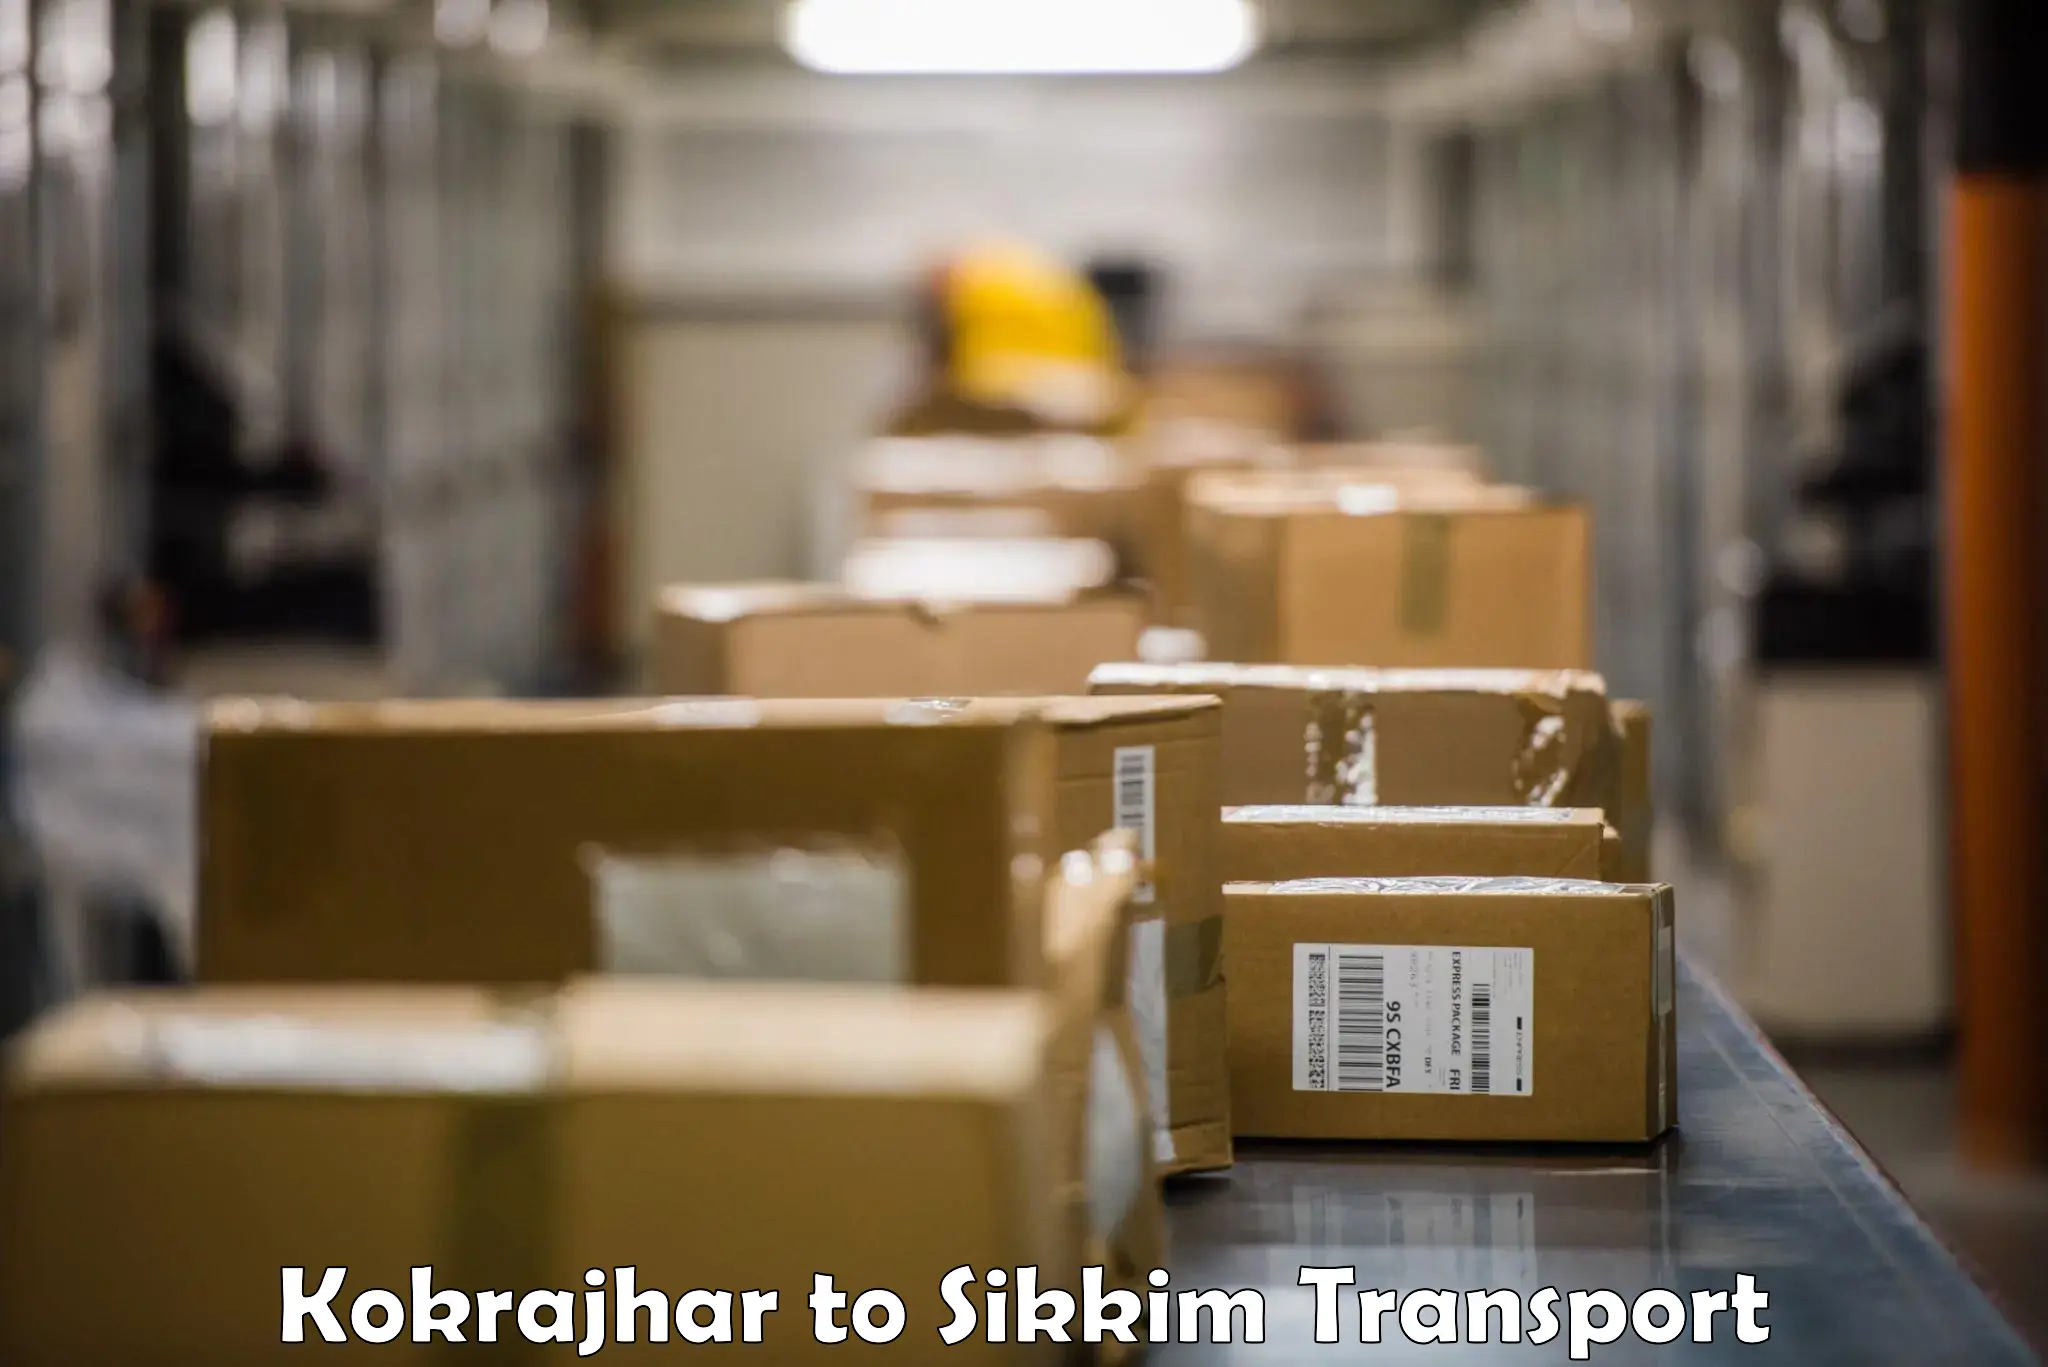 Furniture transport service Kokrajhar to South Sikkim